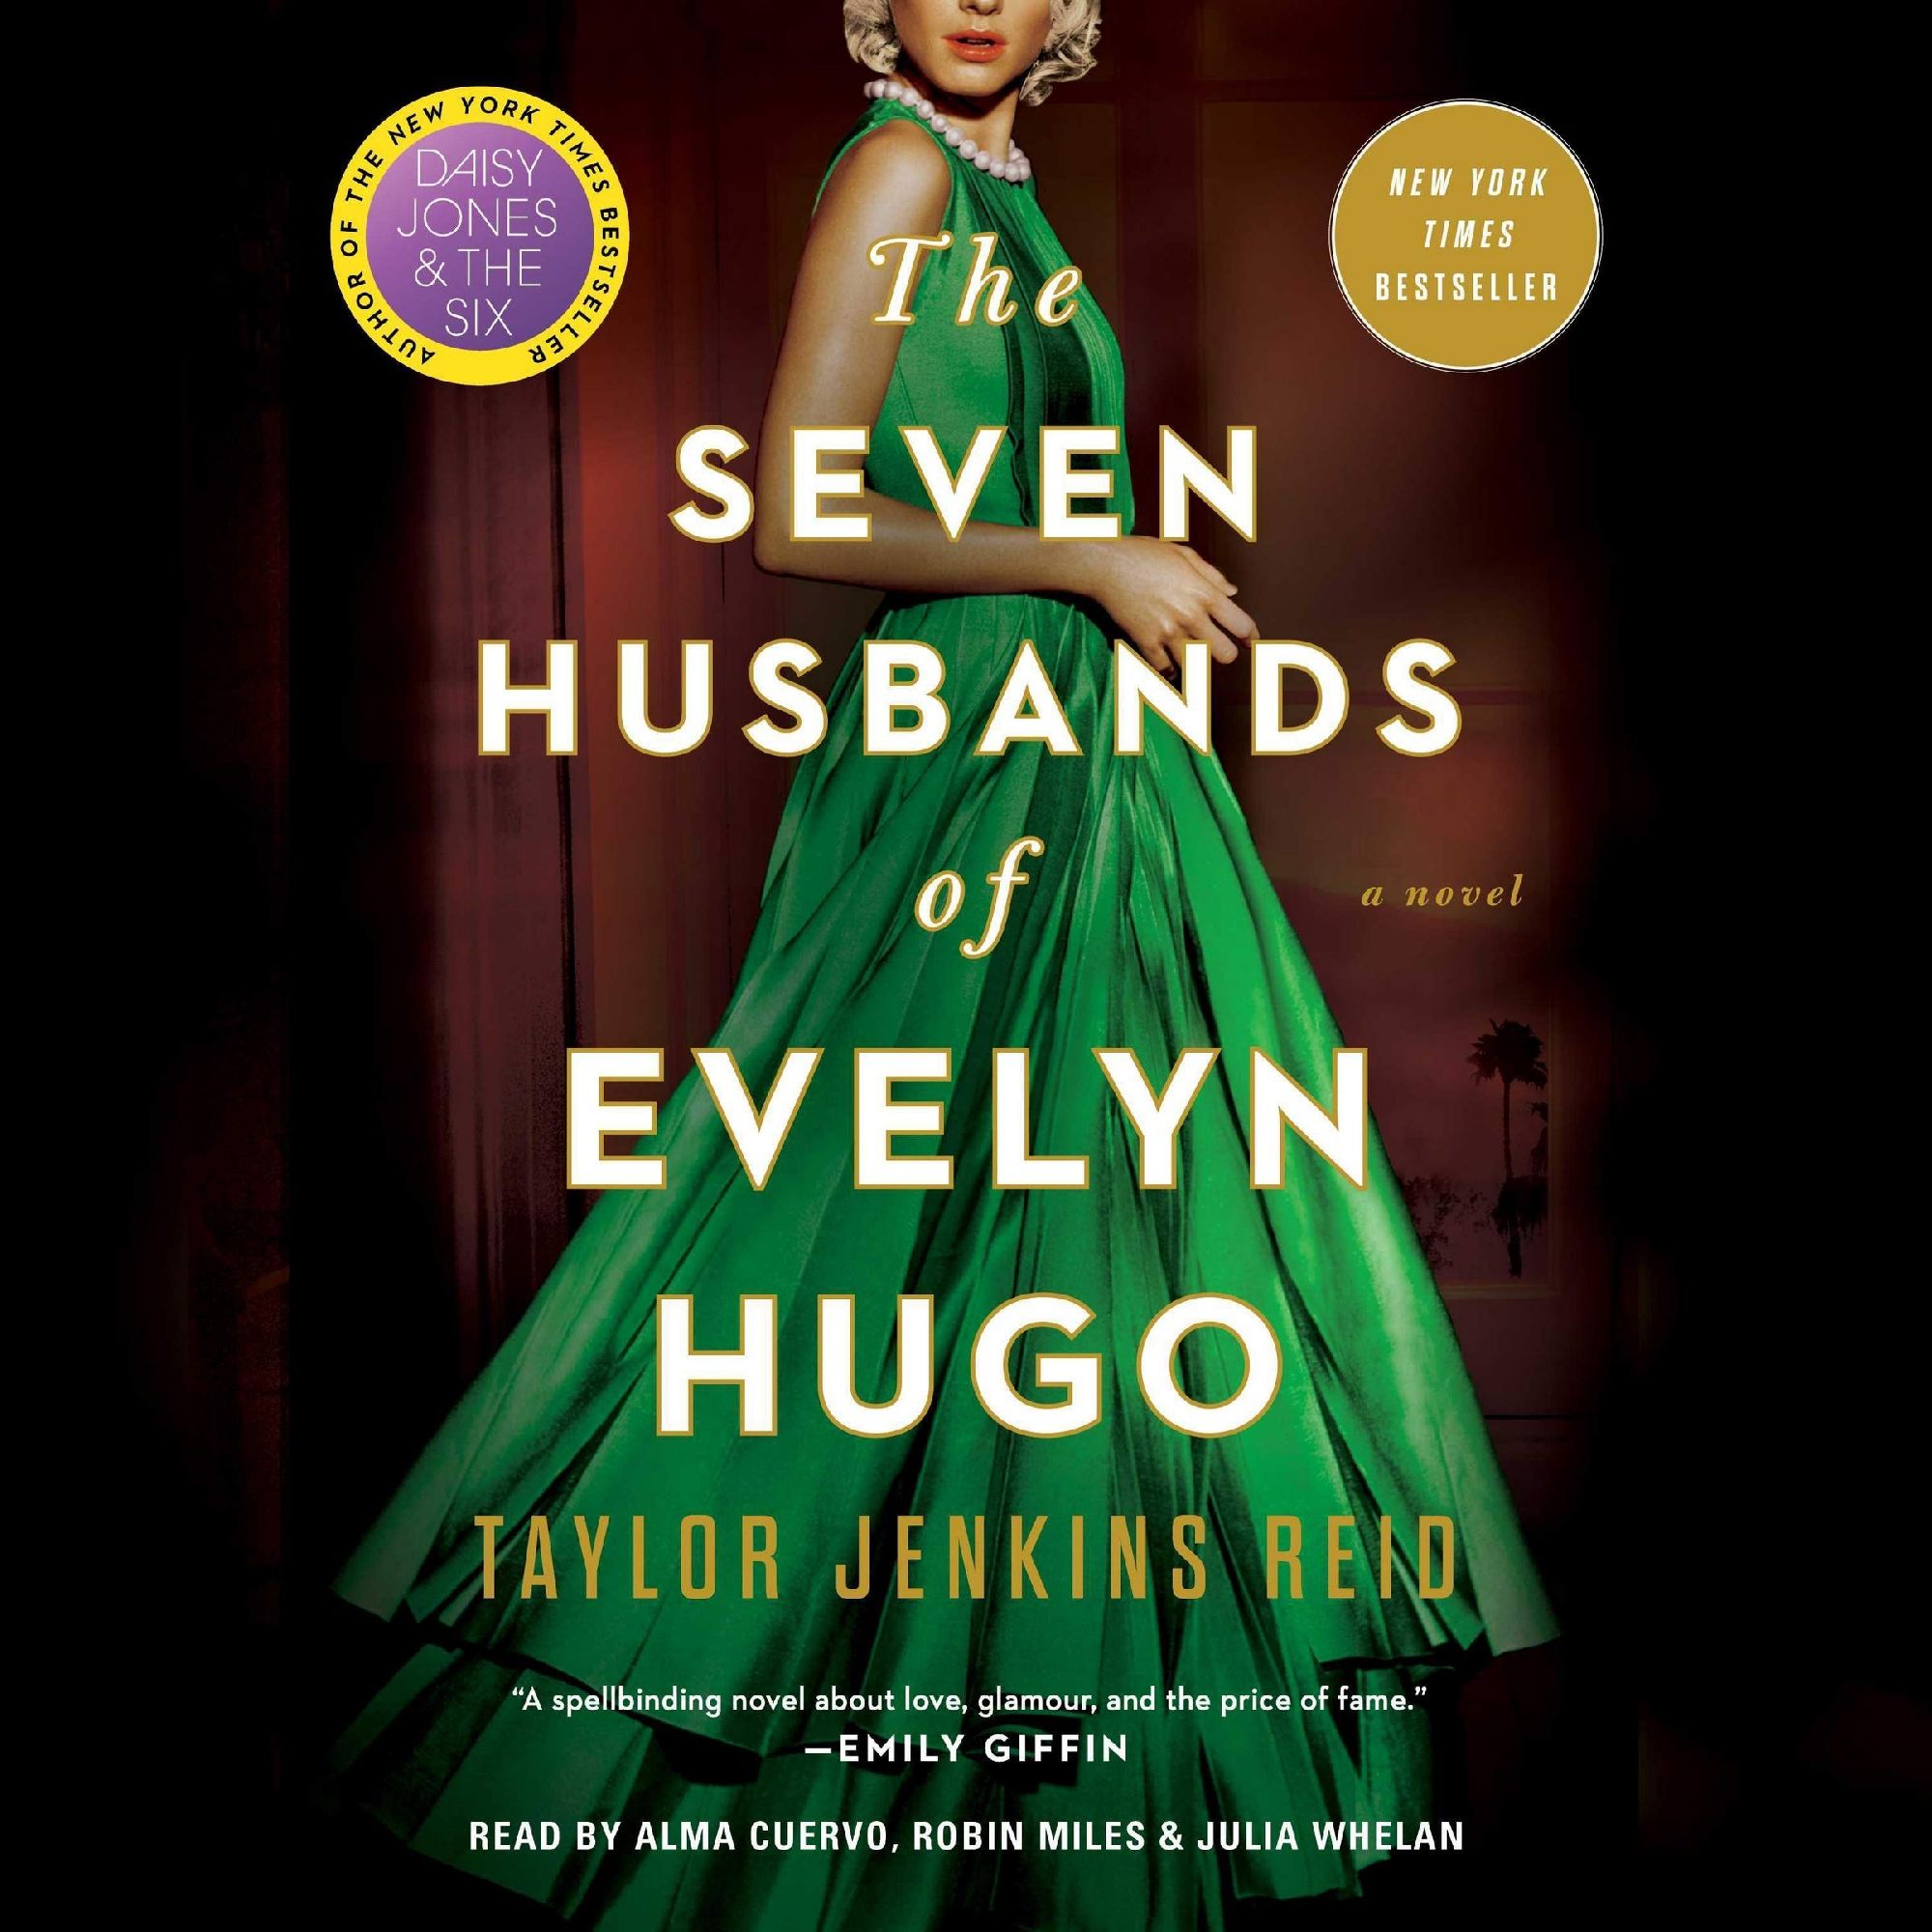 La novela de Taylor Jenkins Reid se ha posicionado últimamente entre los libros más vendidos del mundo.  (Libros Atria)